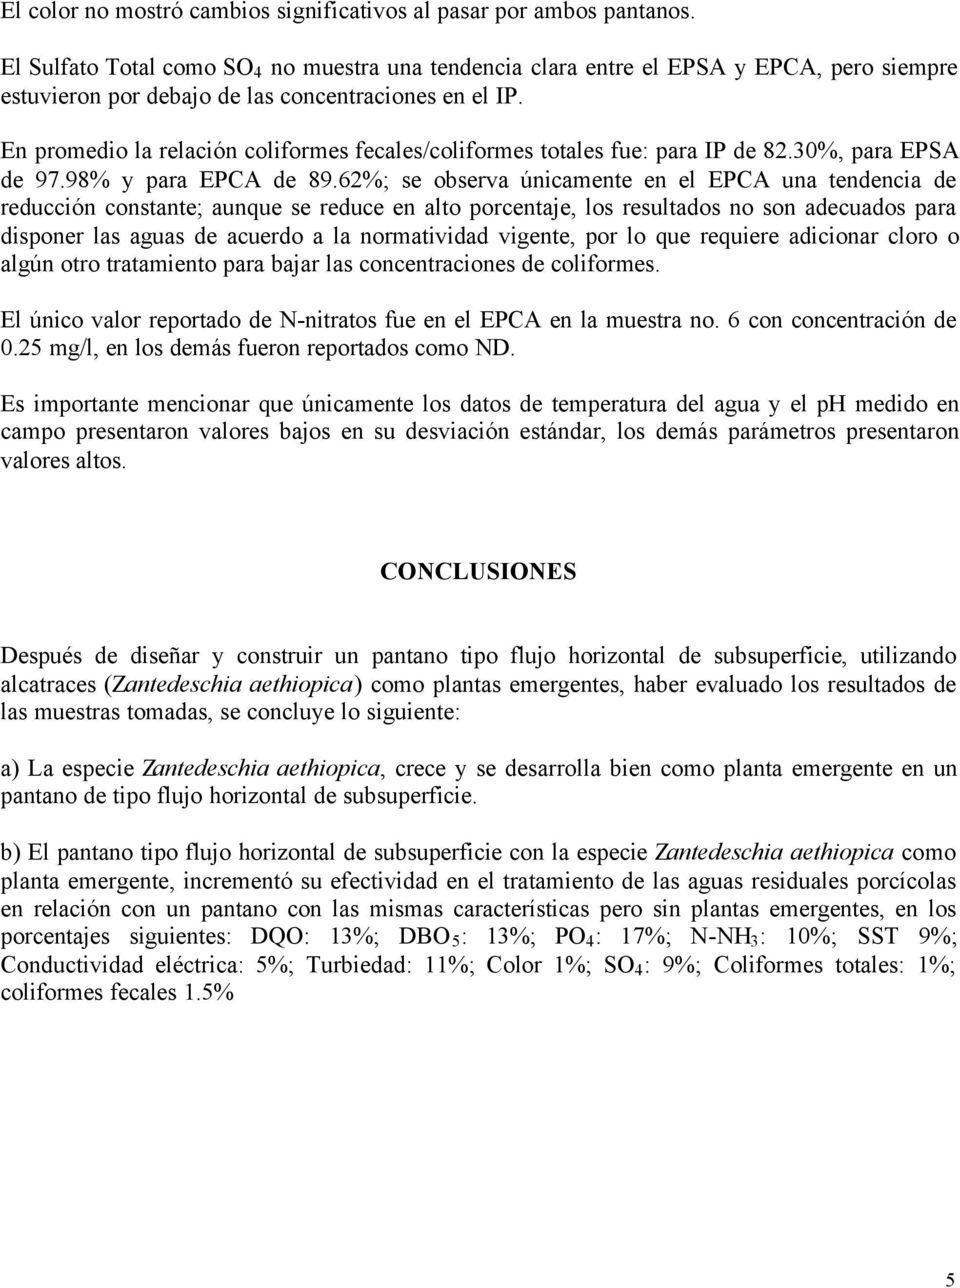 En promedio la relación coliformes fecales/coliformes totales fue: para IP de 82.30%, para EPSA de 97.98% y para EPCA de 89.